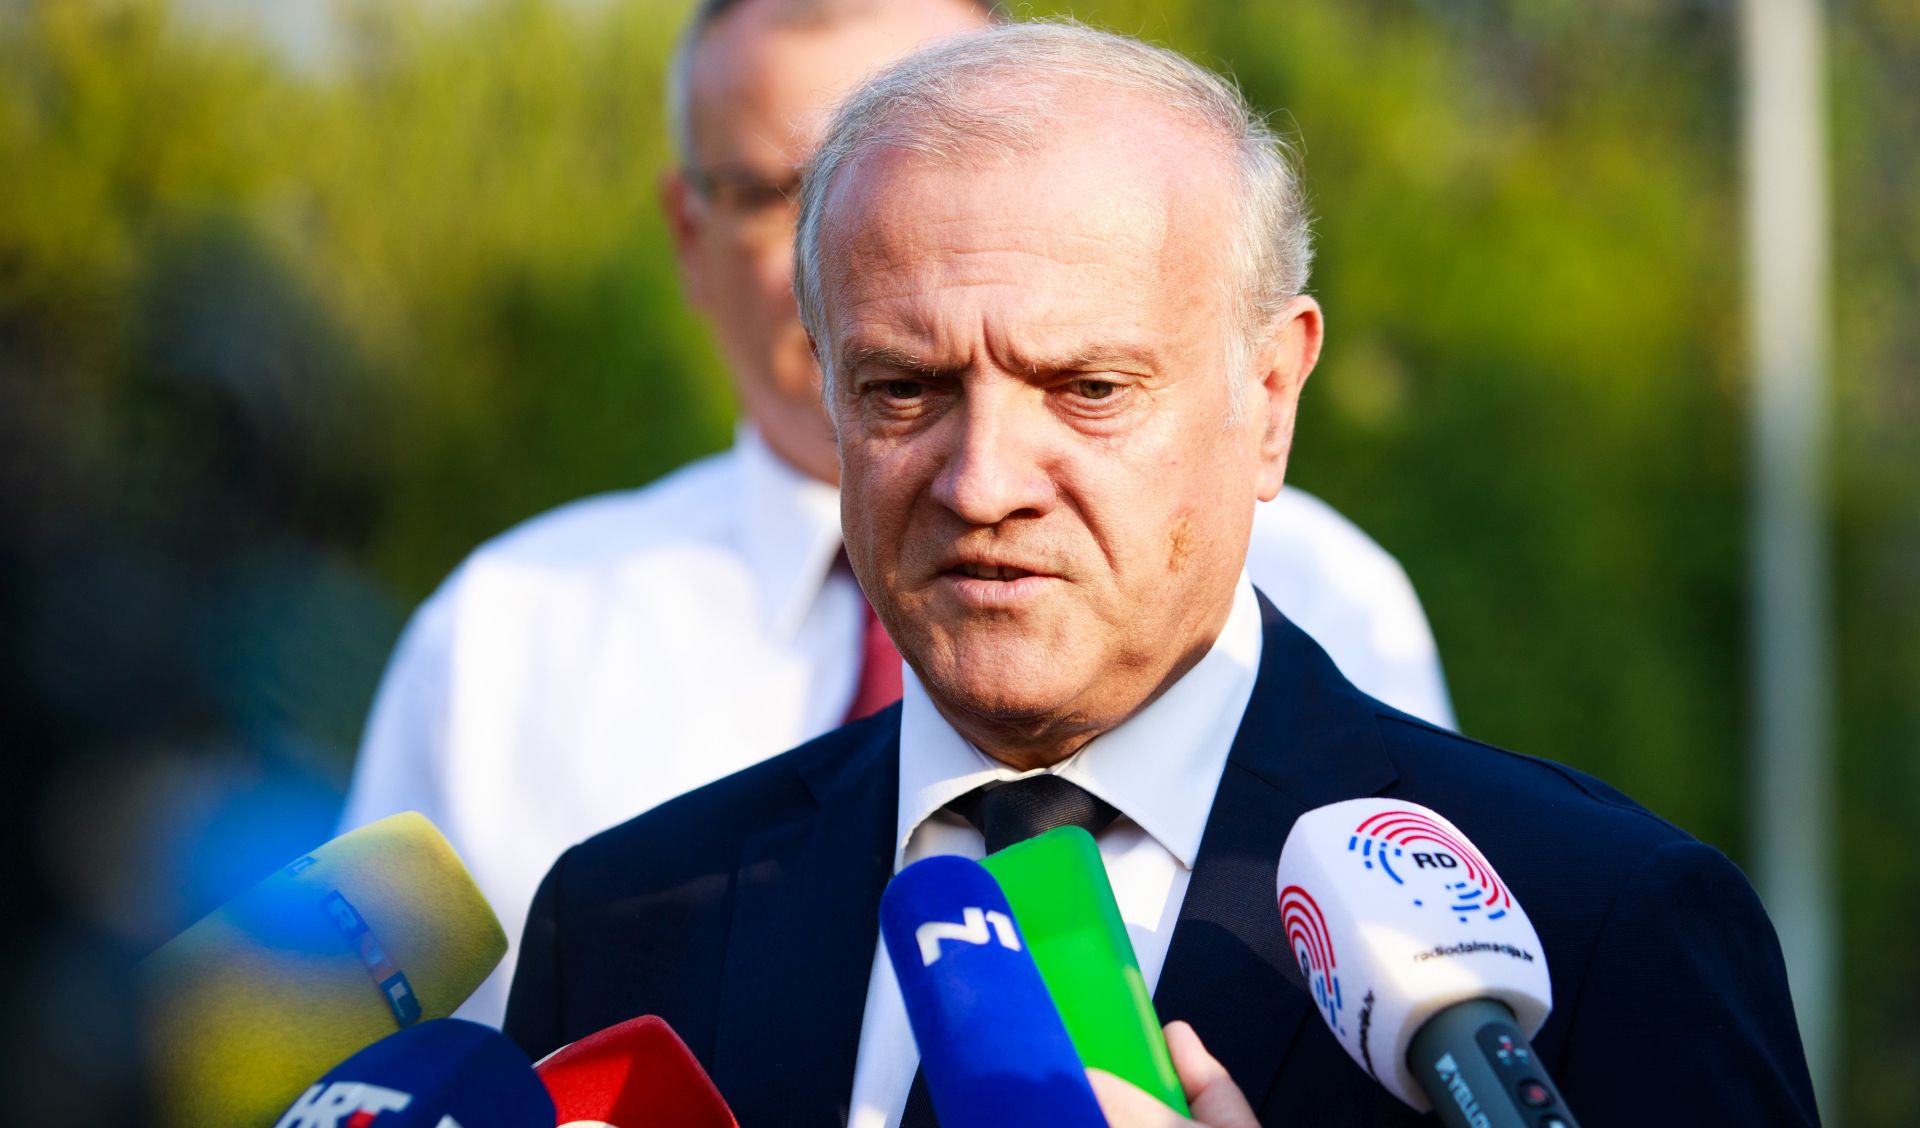 29.08.2019., Split - Ministar pravosuđa Dražen Bošnjaković posjetio je zatvor u Splitu te je dao izjavu za medije.
foto HINA/ Mario STRMOTIĆ